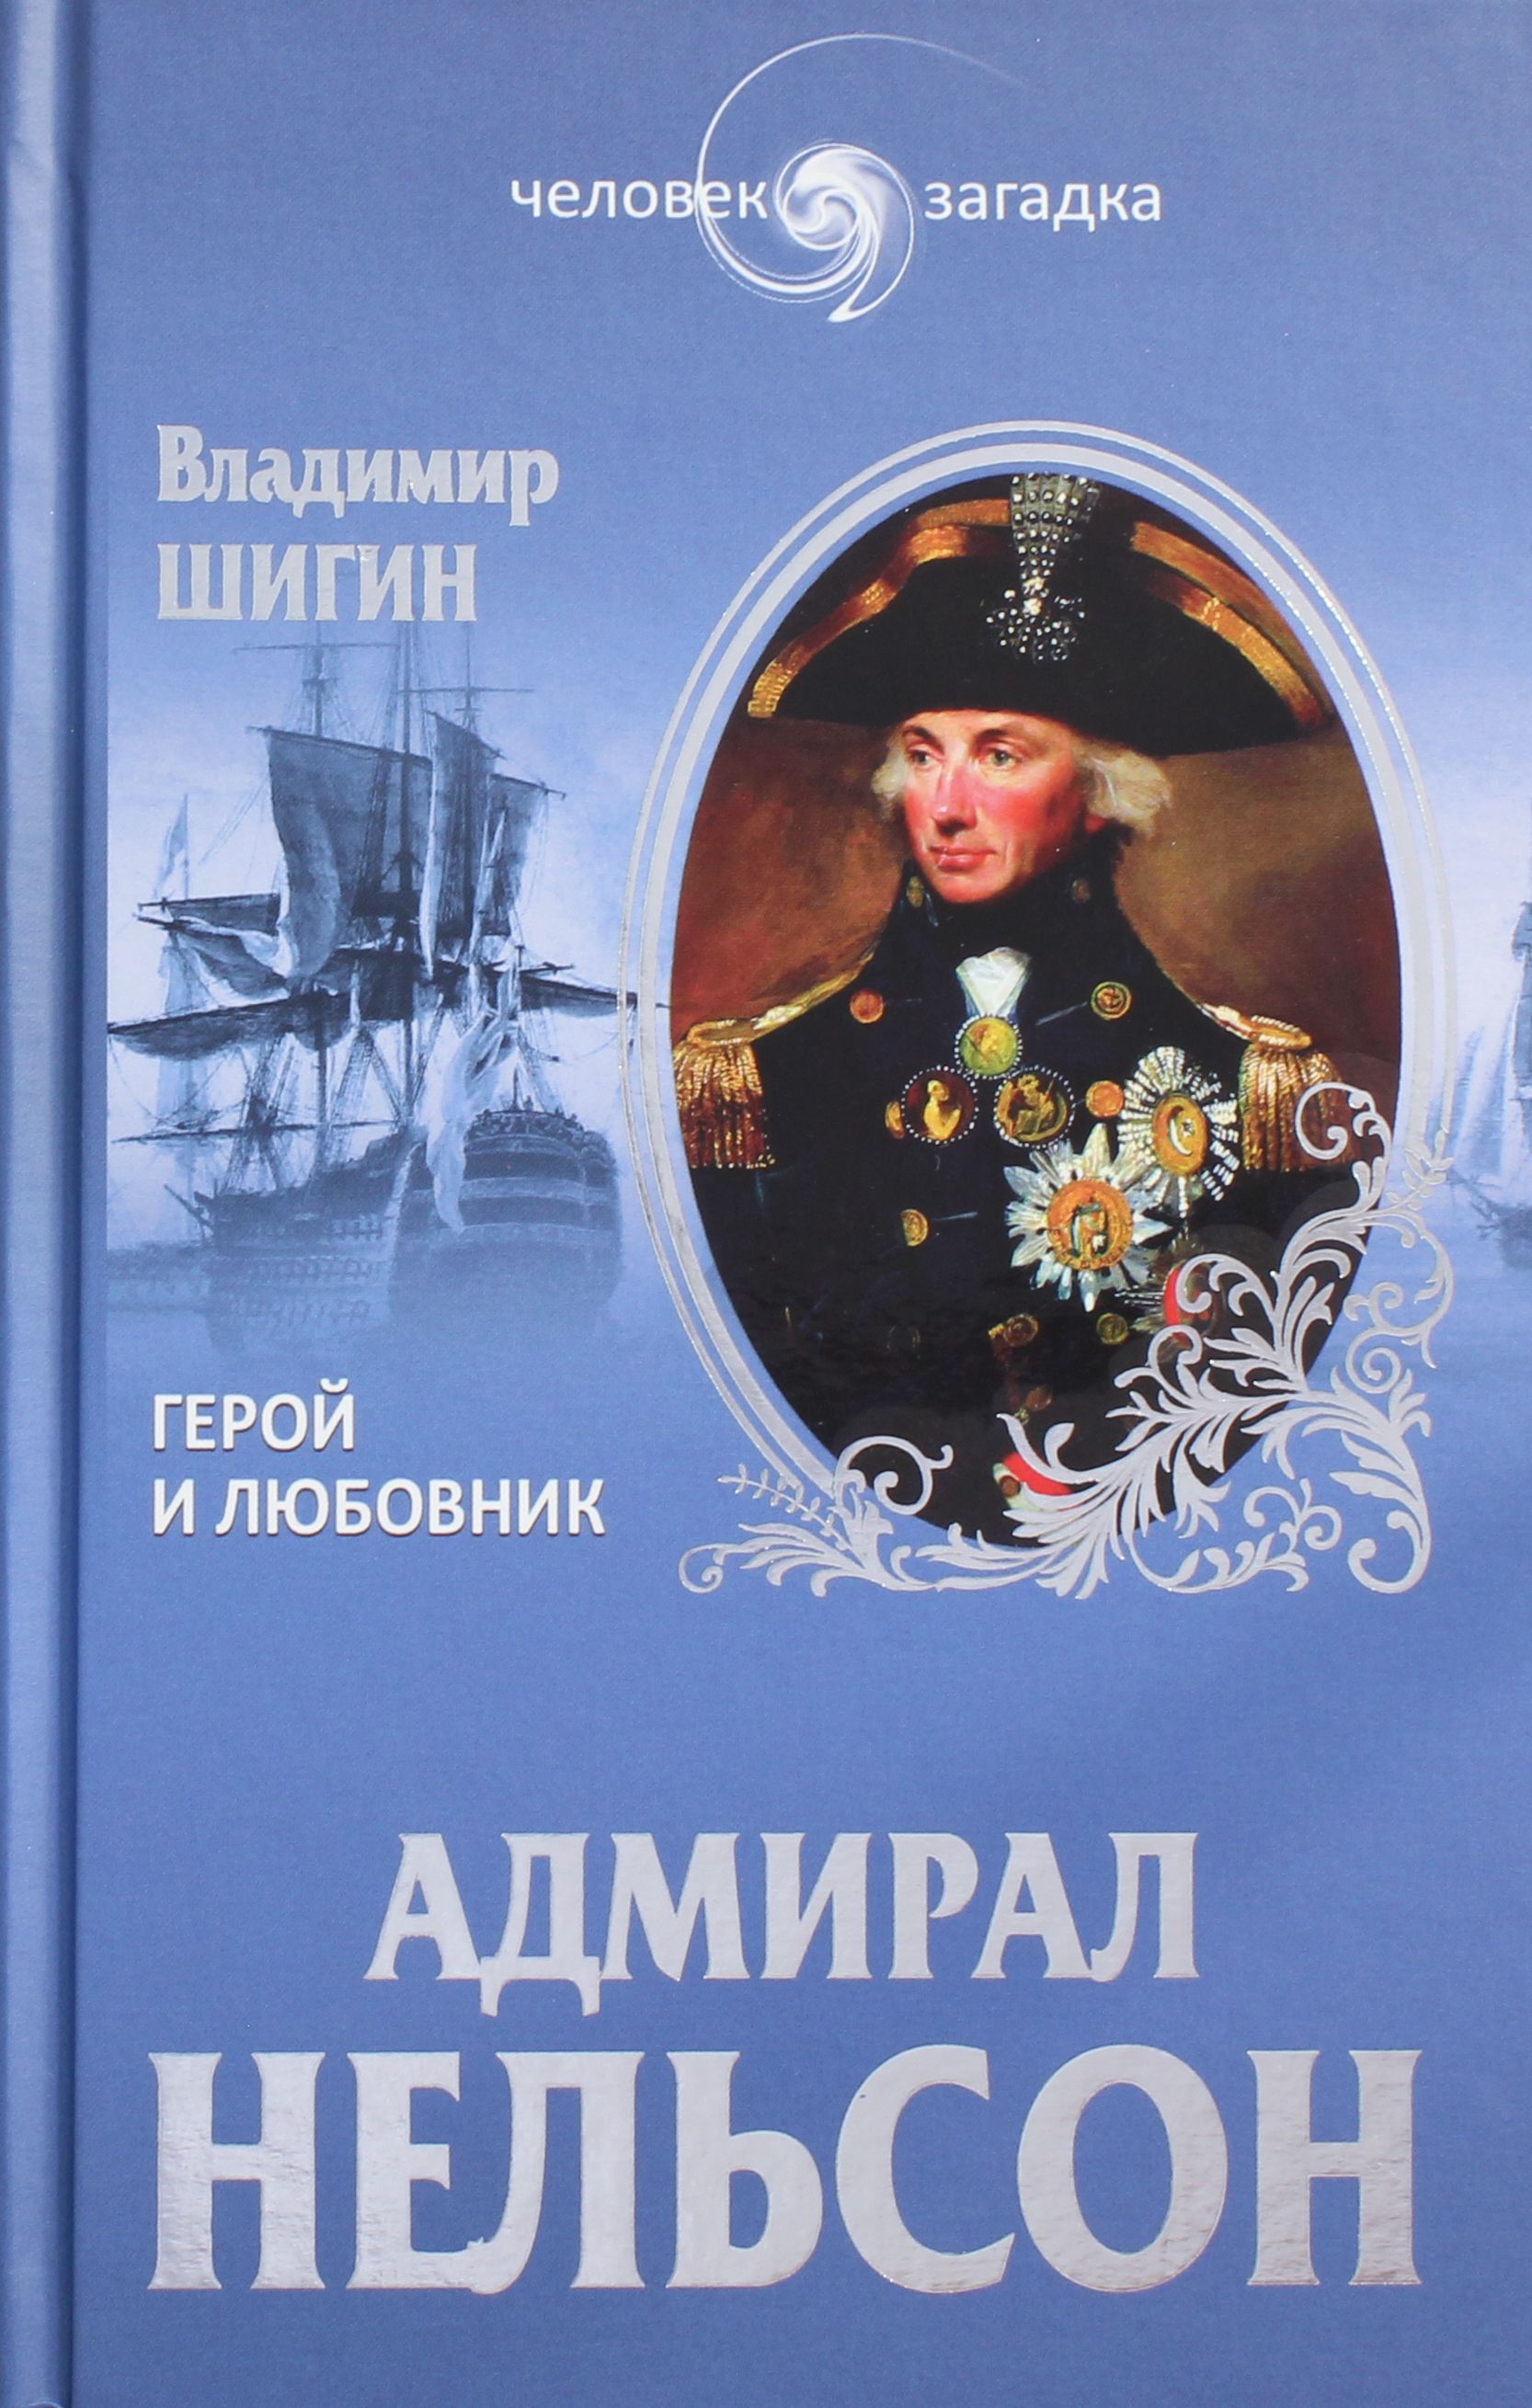 Адмирал книга слушать. Адмирал Нельсон. Шигин в.в. "Адмирал Нельсон". Книга Адмирал. Нельсон герой.